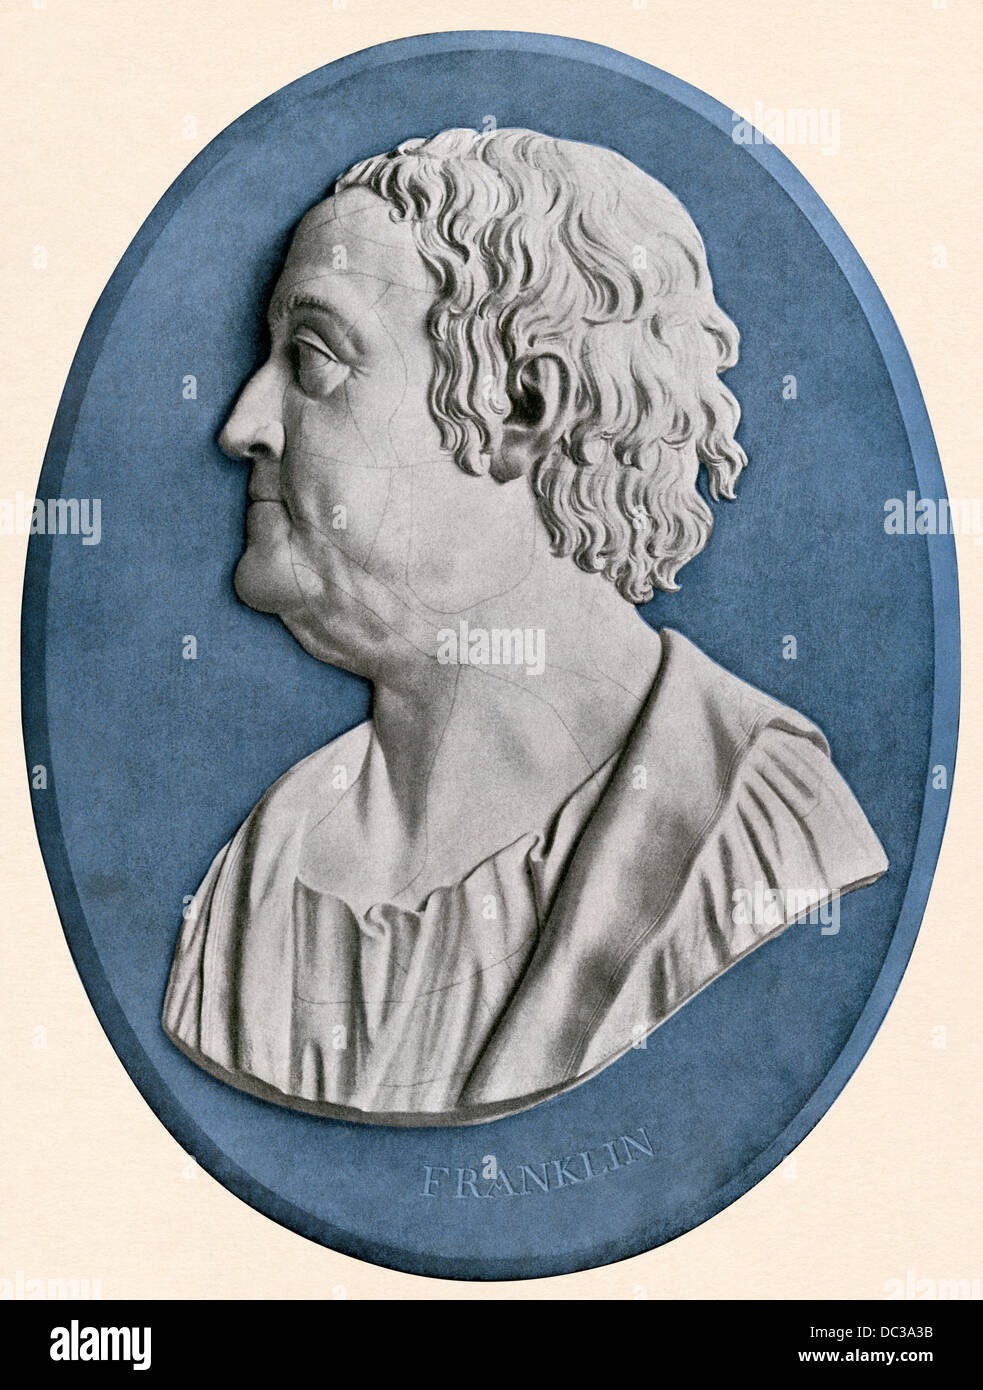 Benjamin Franklin profil sur un médaillon Wedgewood par John Flaxman. Reproduction couleur Banque D'Images